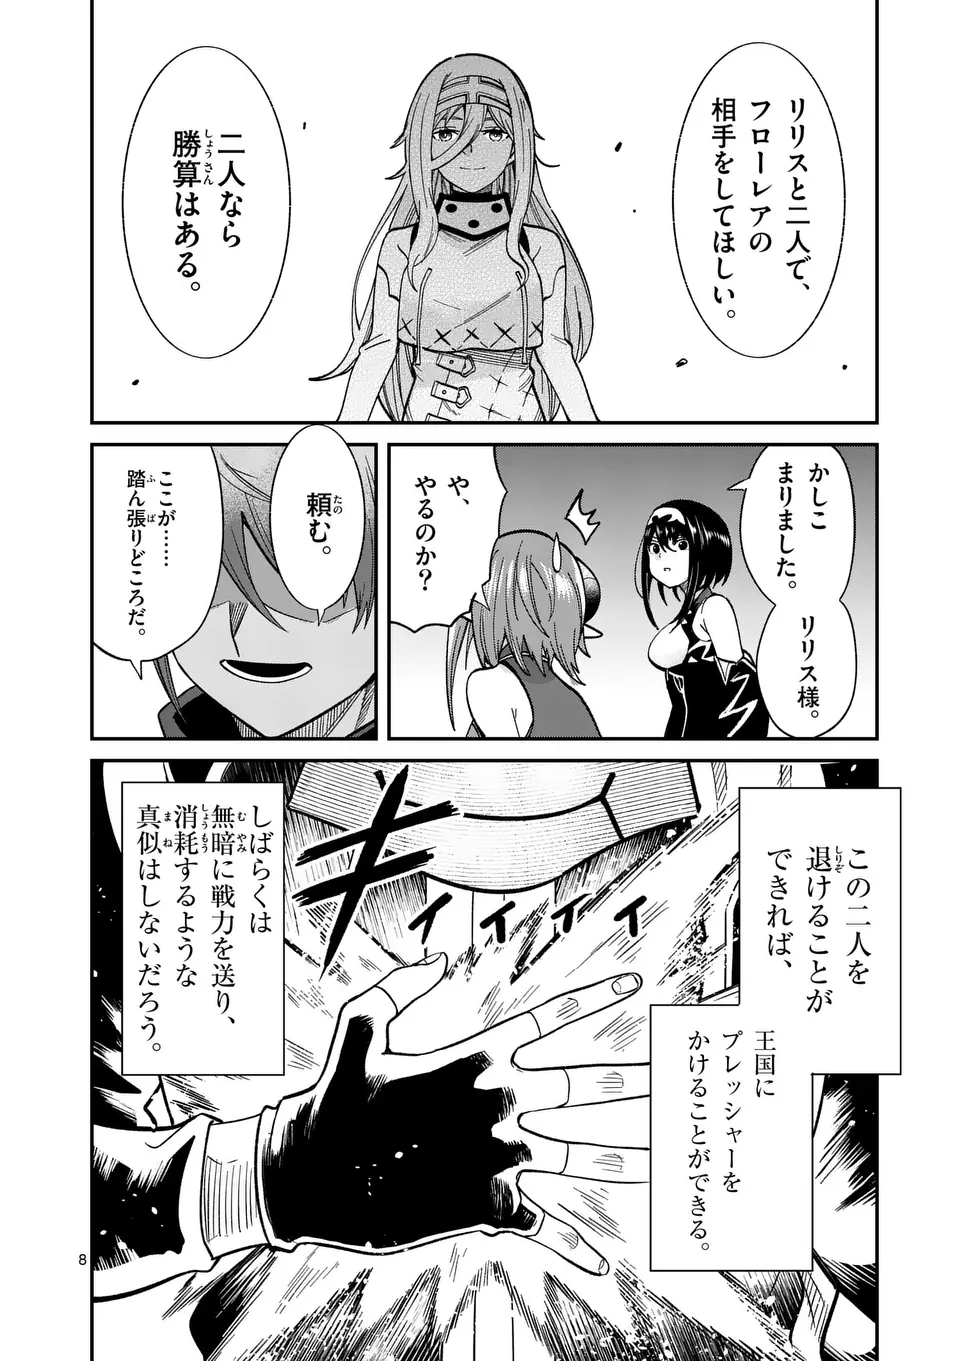 Power-Hara Genkai Yuusha, Maougun kara Koutaiguu de Scout sareru - Chapter 12 - Page 8